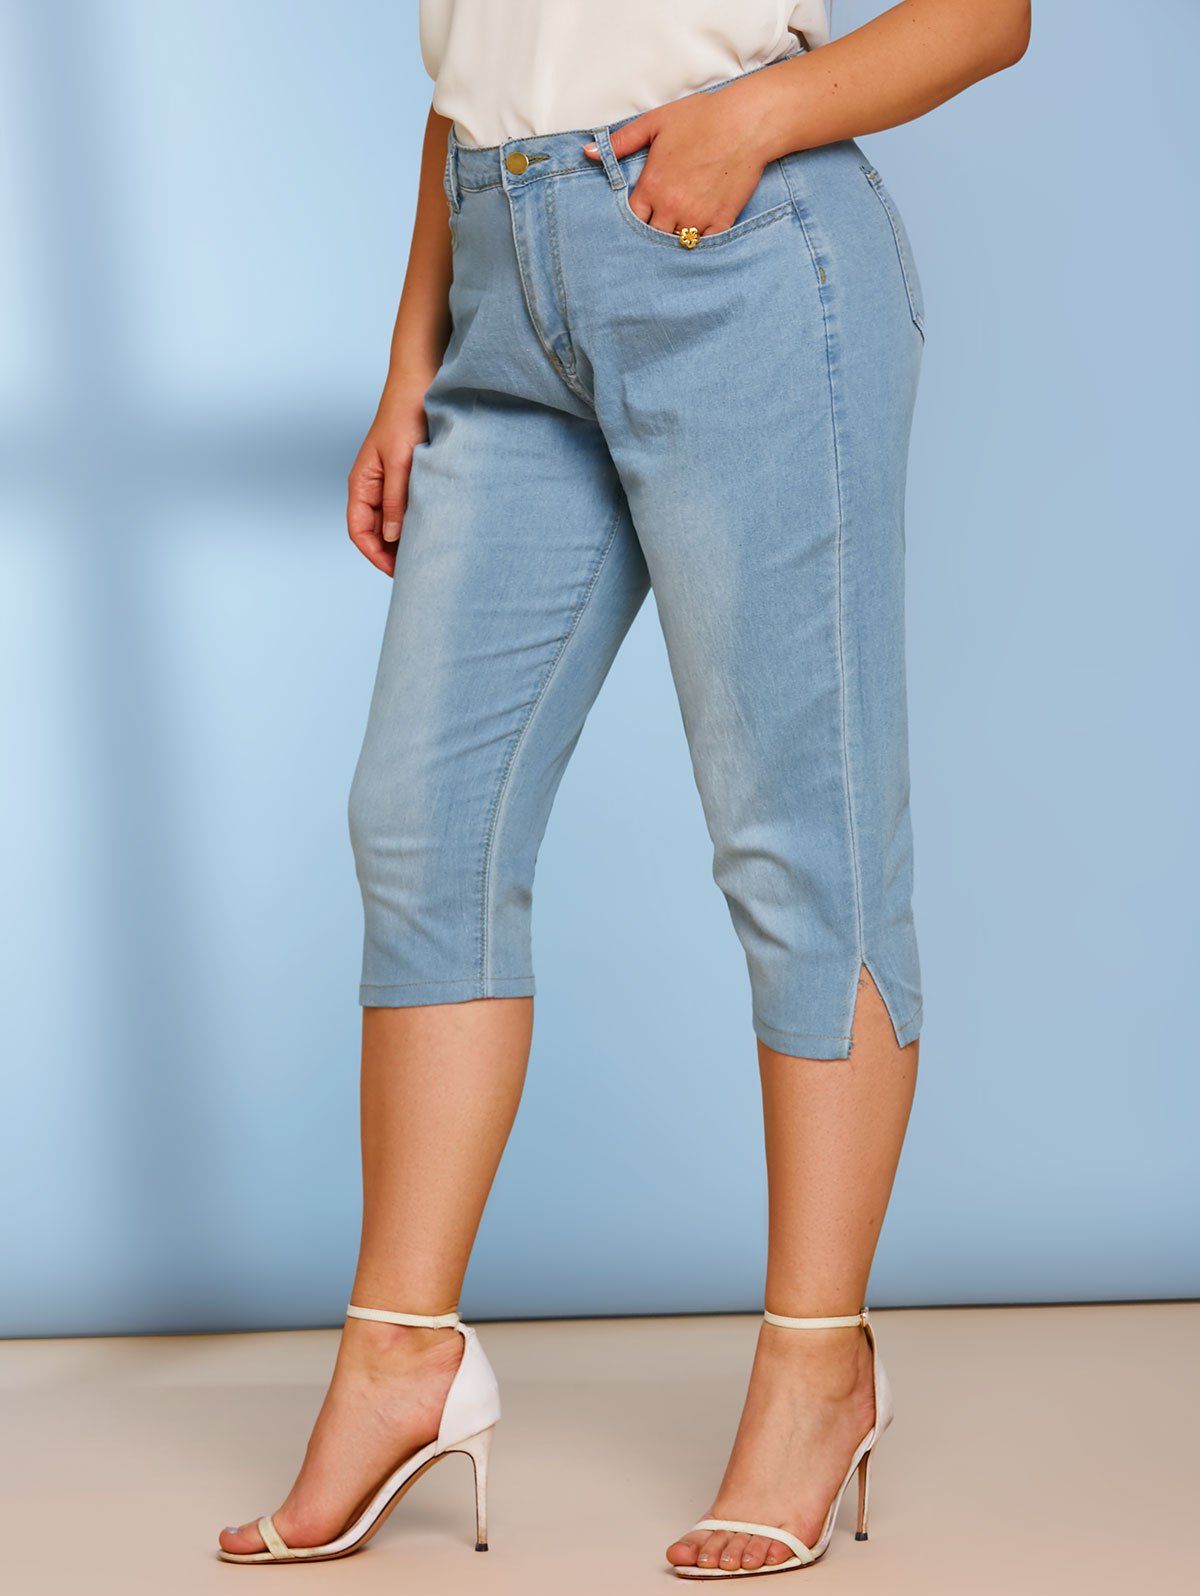 Plain Mid Rise Skinny Plus Size Capri Jeans - LIGHT BLUE XL